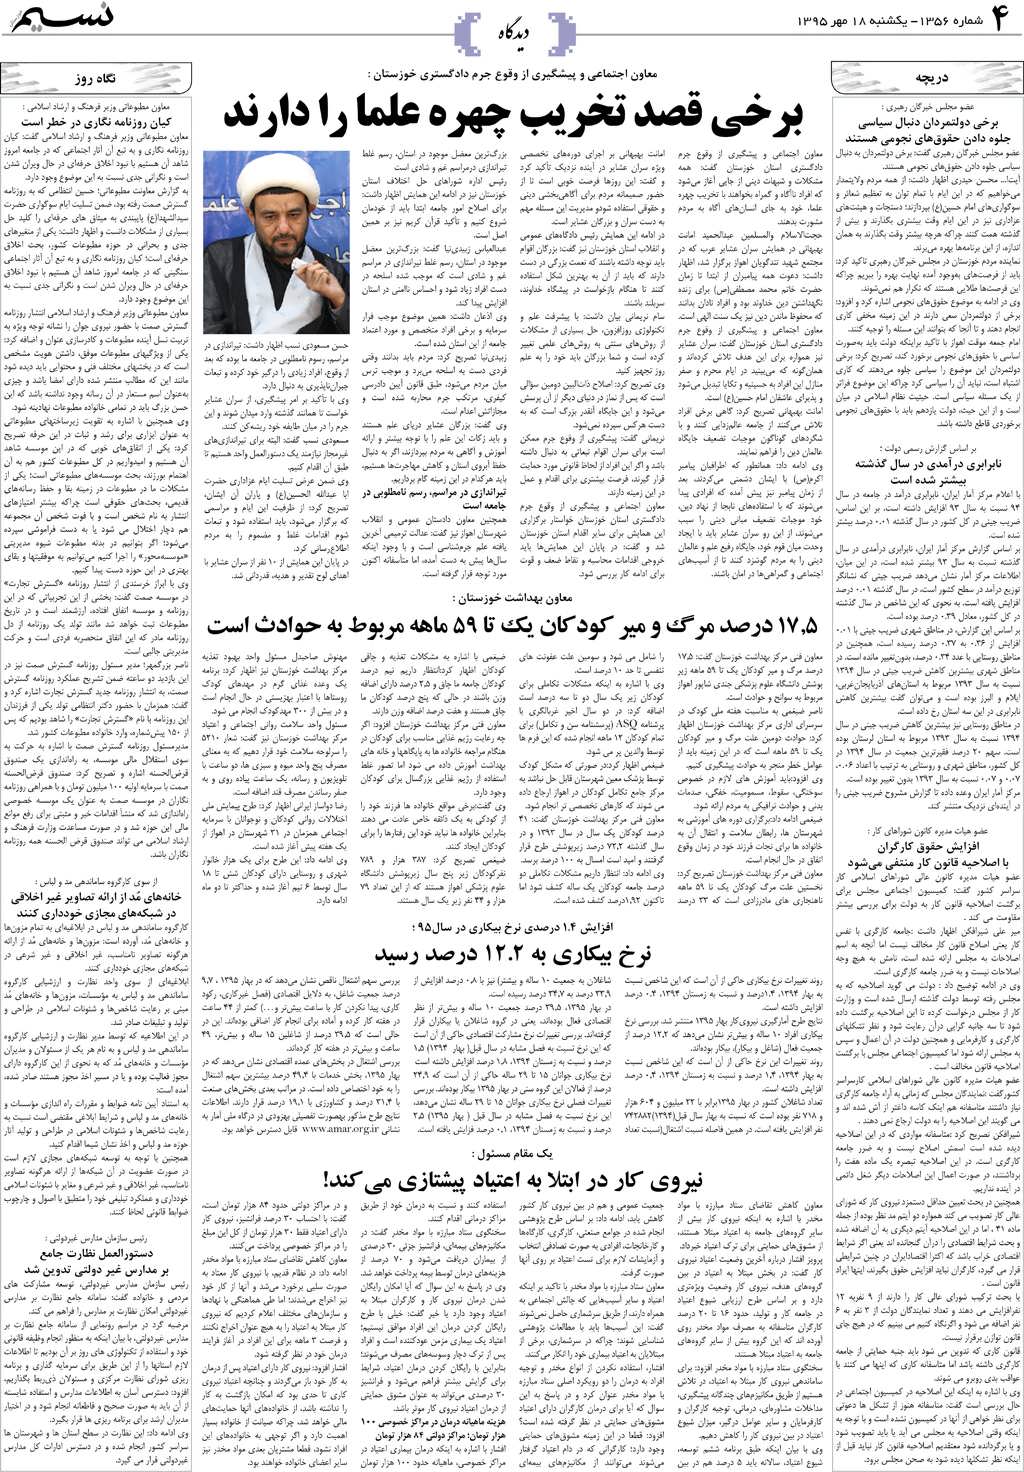 صفحه دیدگاه روزنامه نسیم شماره 1356